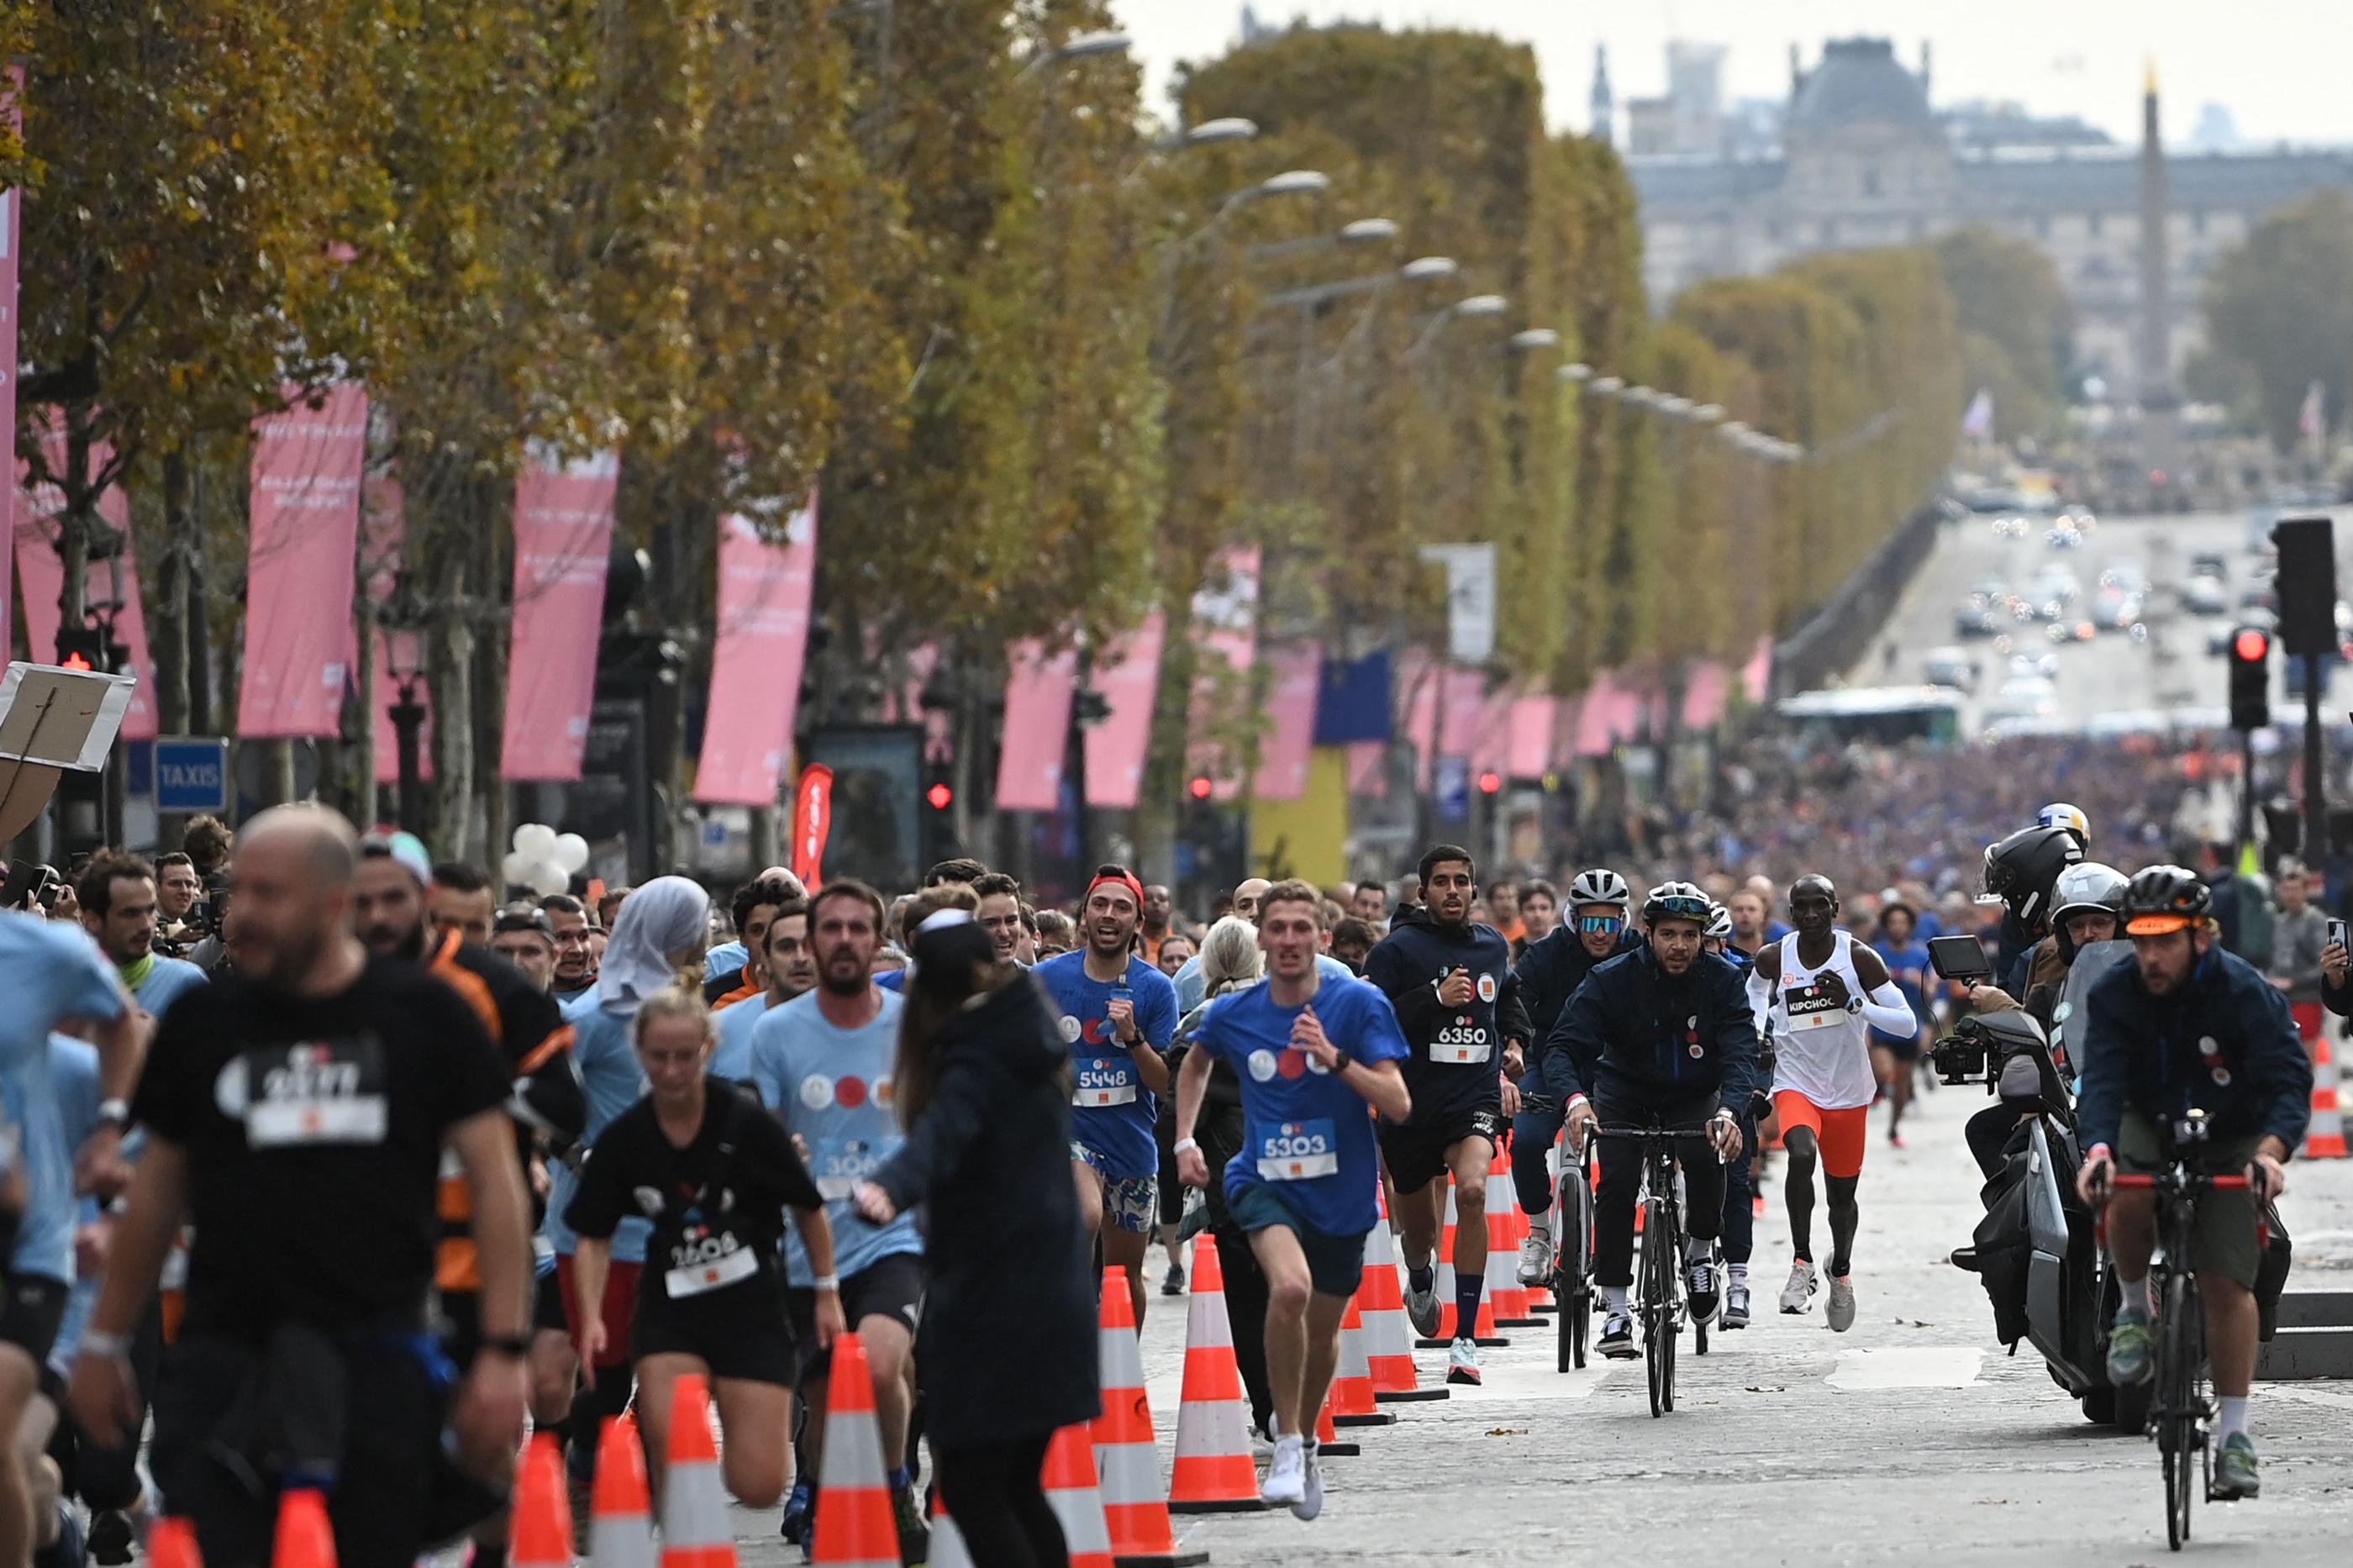 Paris, le 31 octobre 2021. Plus de 20 000 participants sont attendus pour cette épreuve grand public des Jeux olympiques 2024. AFP/Anne-Christine Poujoulat